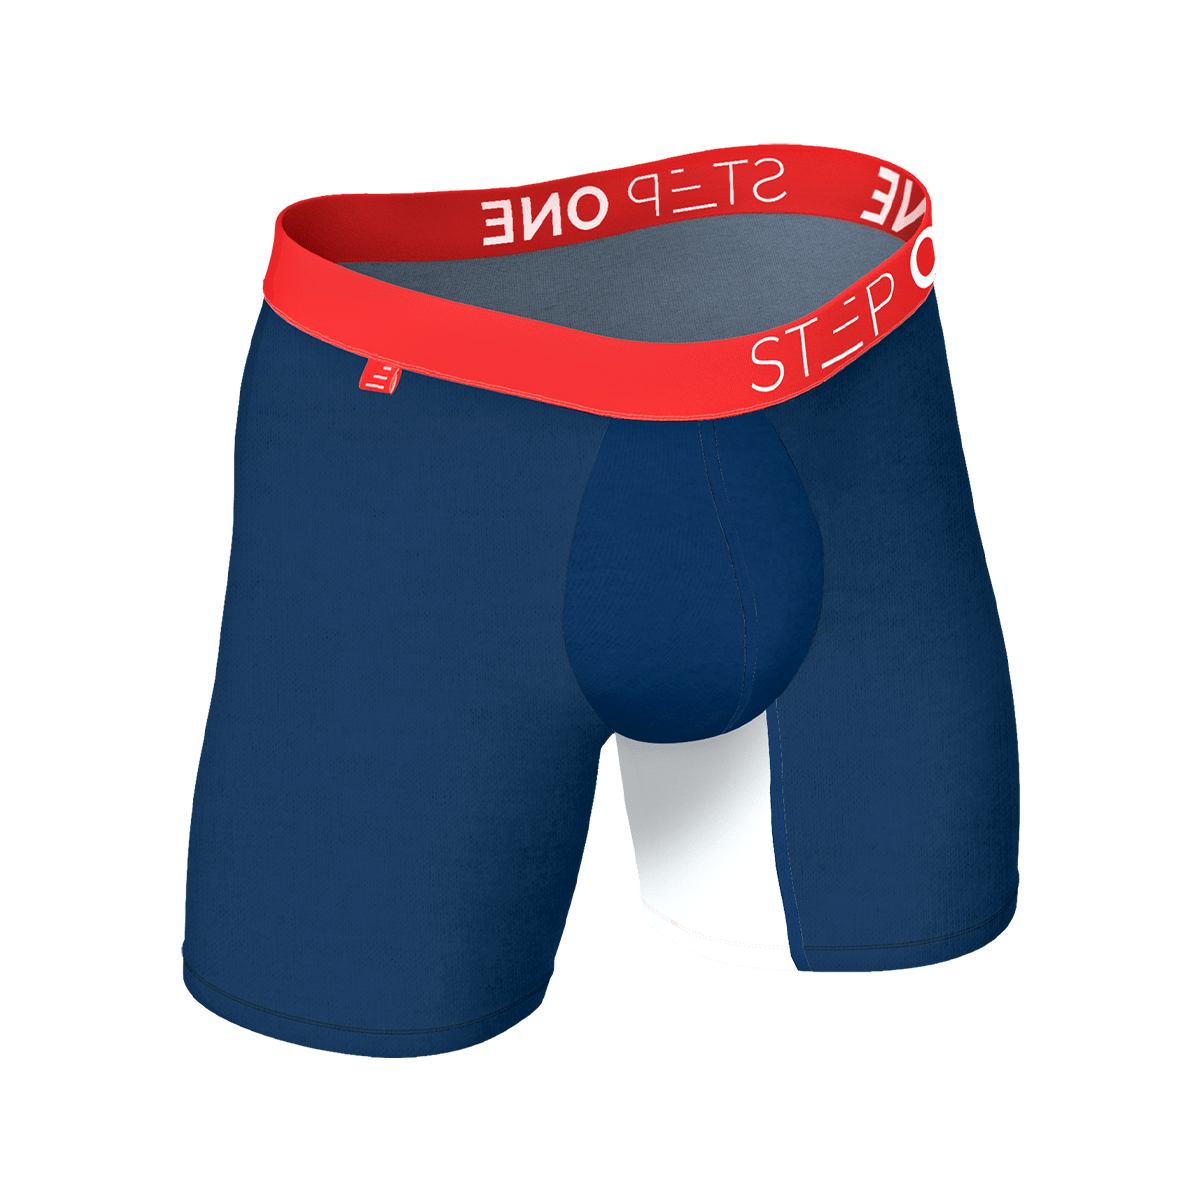 Blue Men's Boxer Brief Underwear